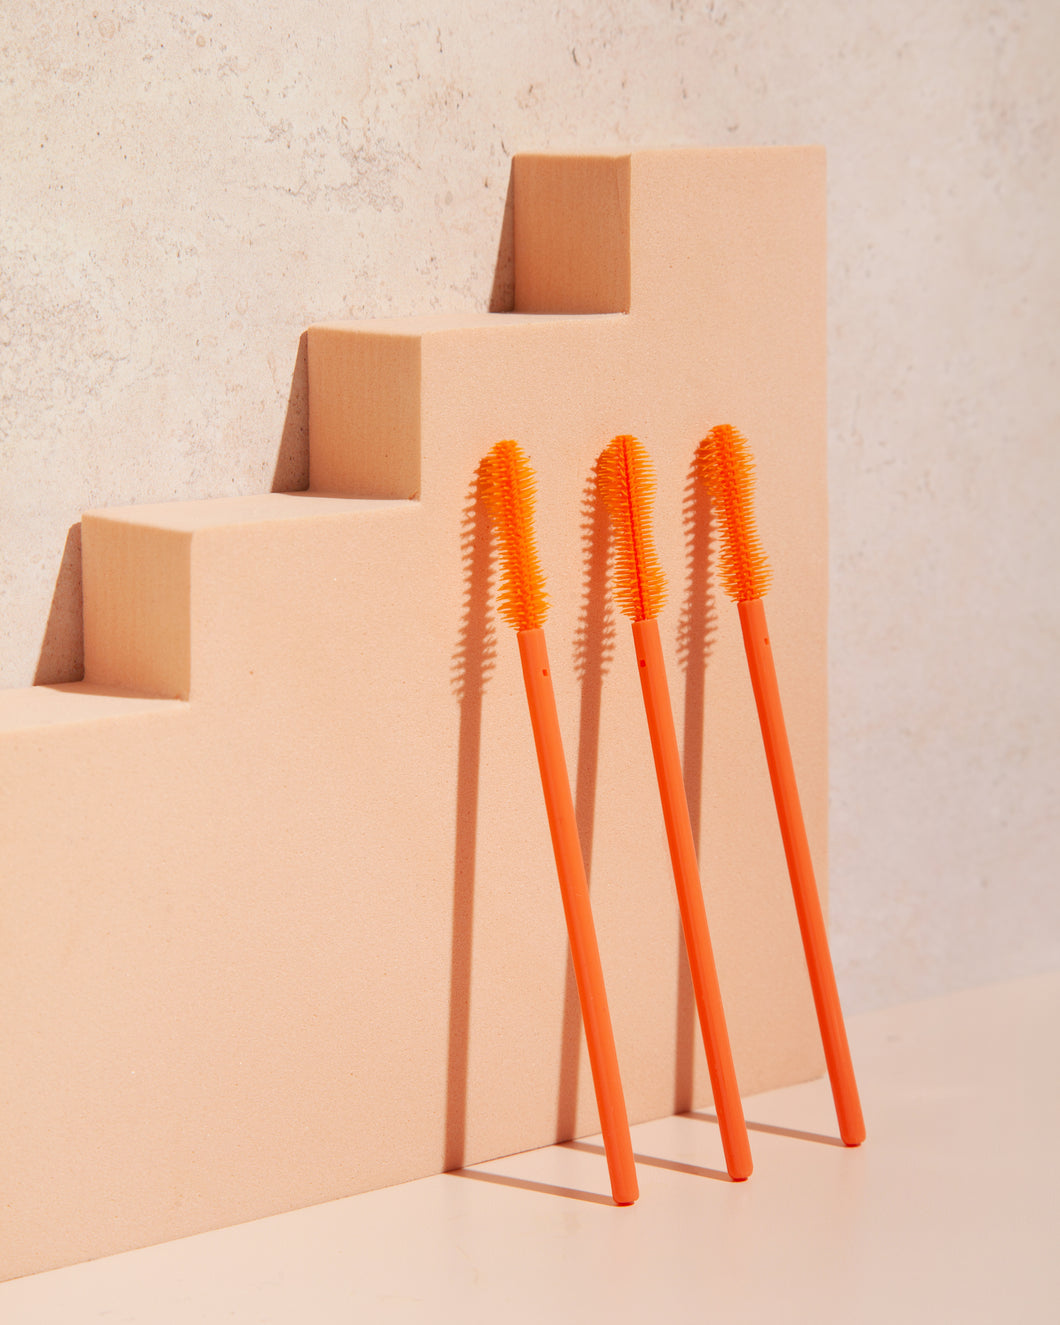 3 orange eyelash wands resting on an orange background